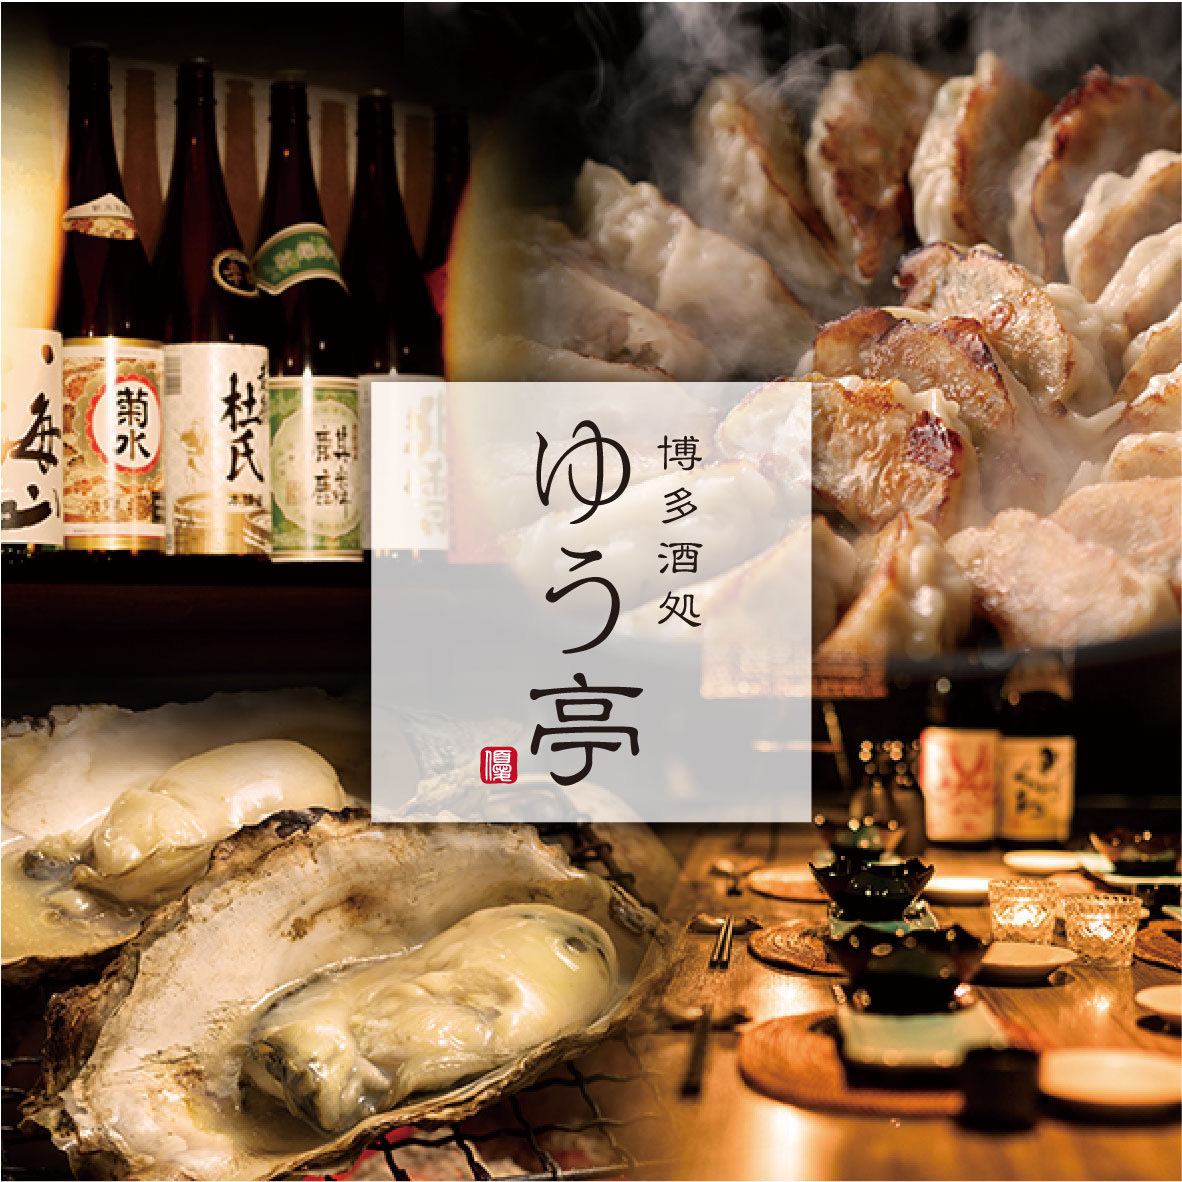 您可以在融合了日式和西式风格的时尚私人居酒屋享用菜肴。